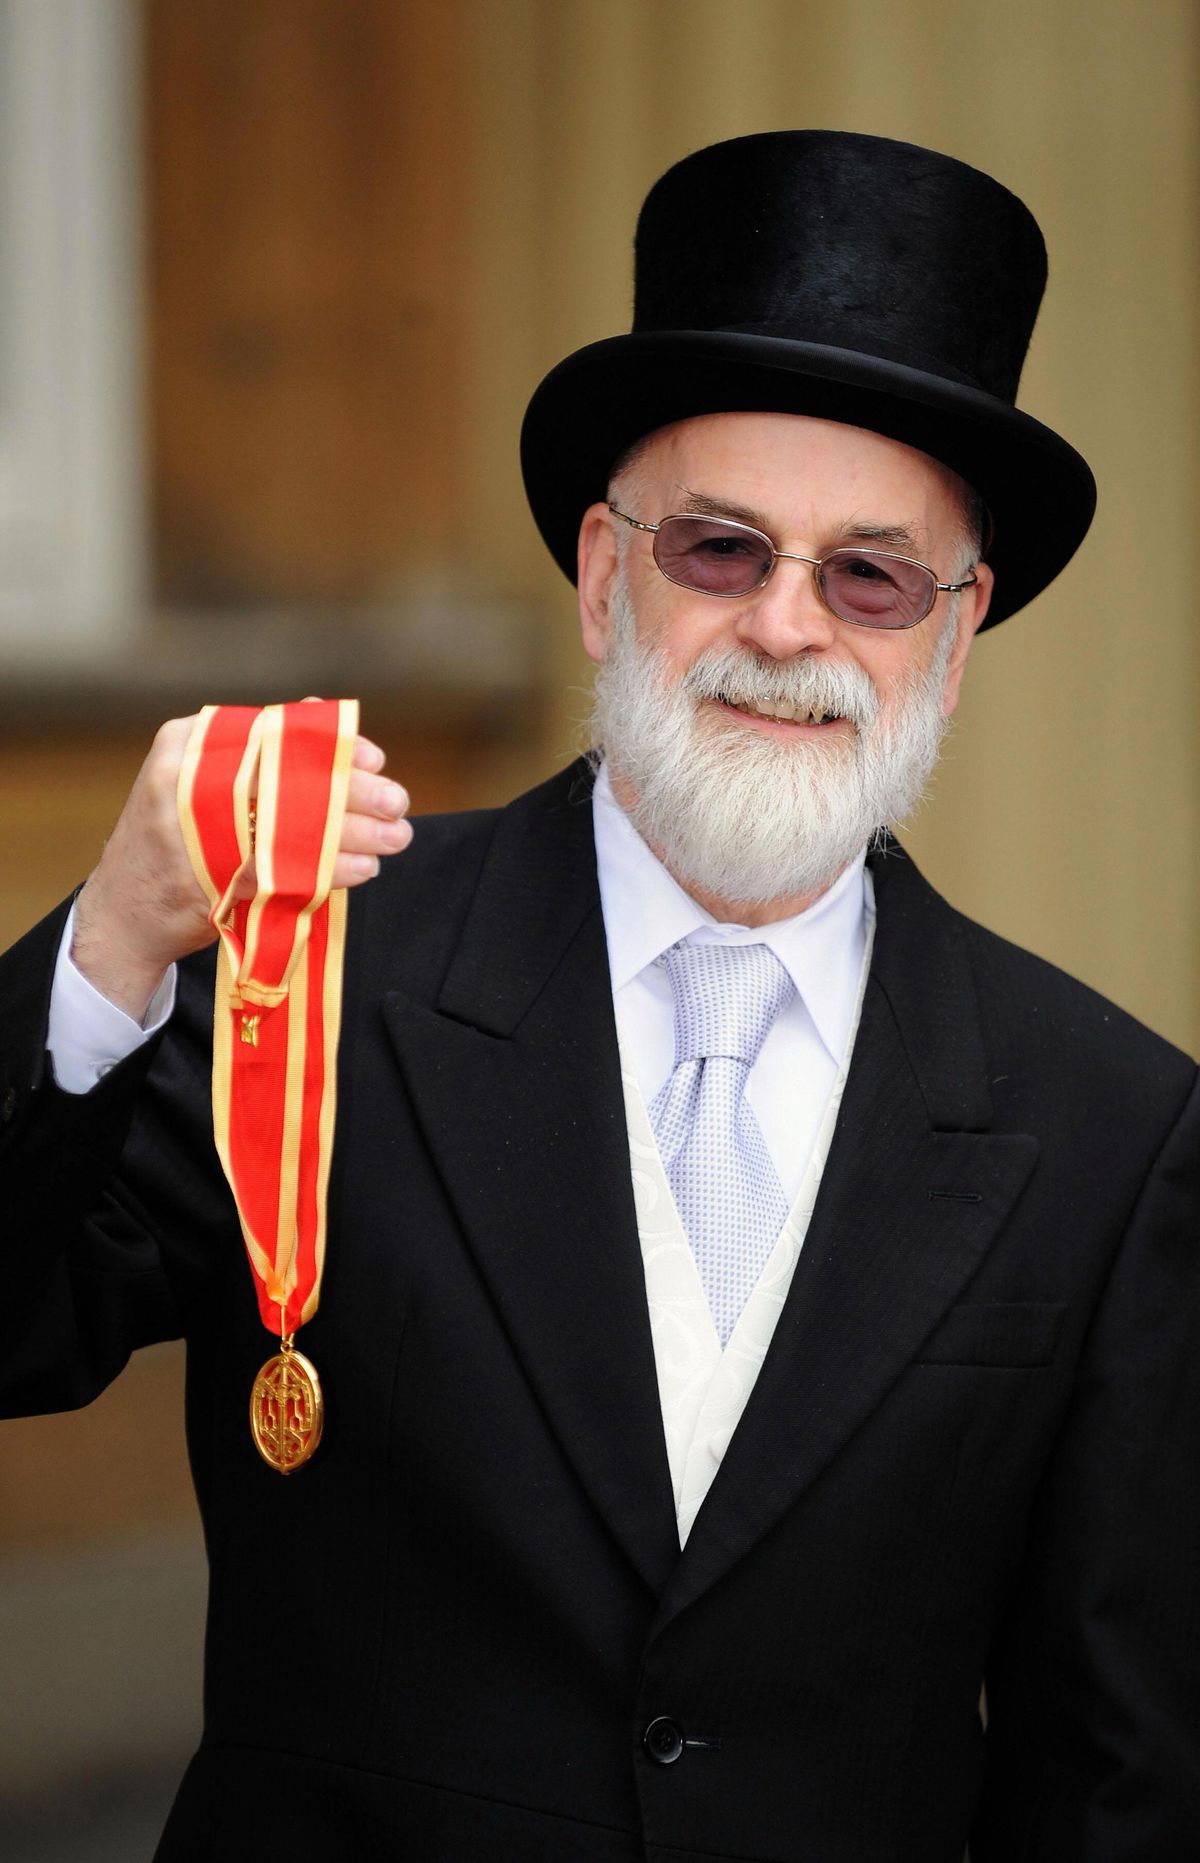 Sir Terry Pratchett visar sin riddarpris utanför Buckingham Palace.